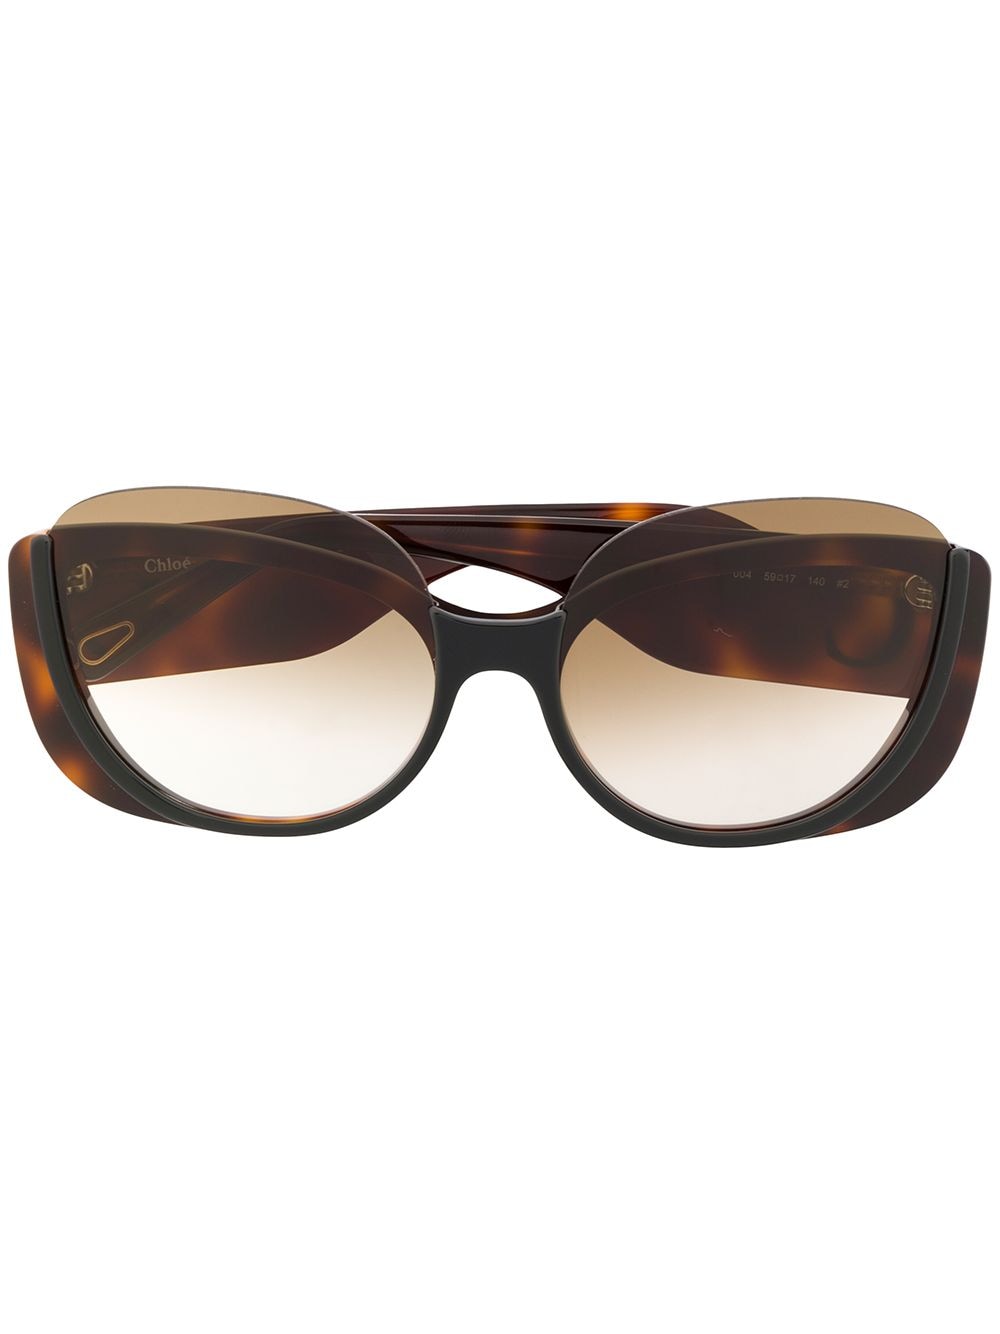 фото Chloé eyewear солнцезащитные очки в оправе 'кошачий глаз'